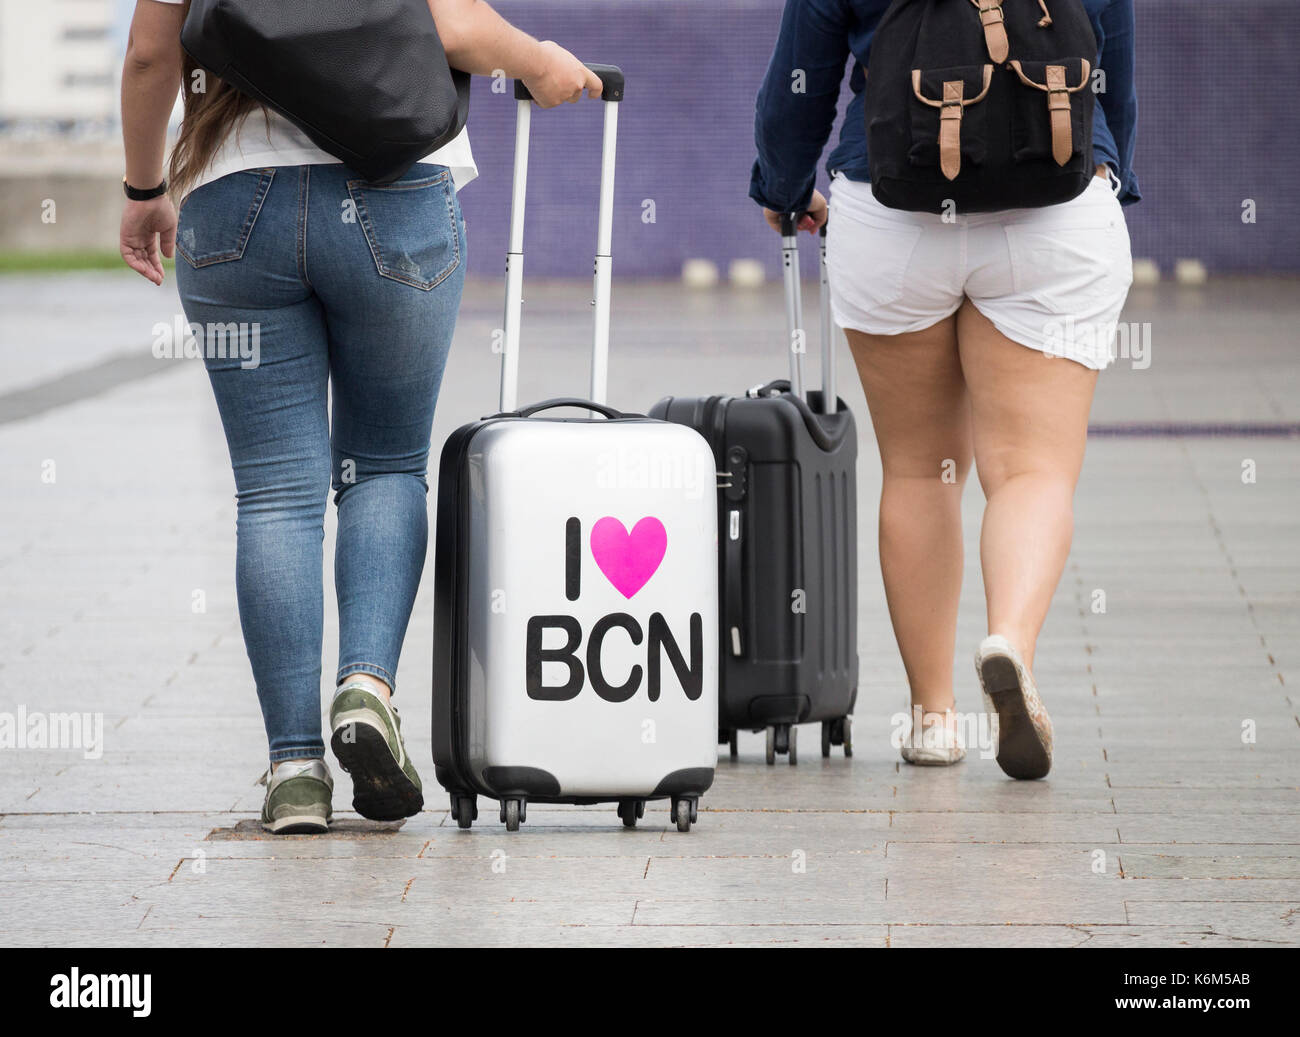 J'adore Barcelone sur une valise à roulettes. Banque D'Images